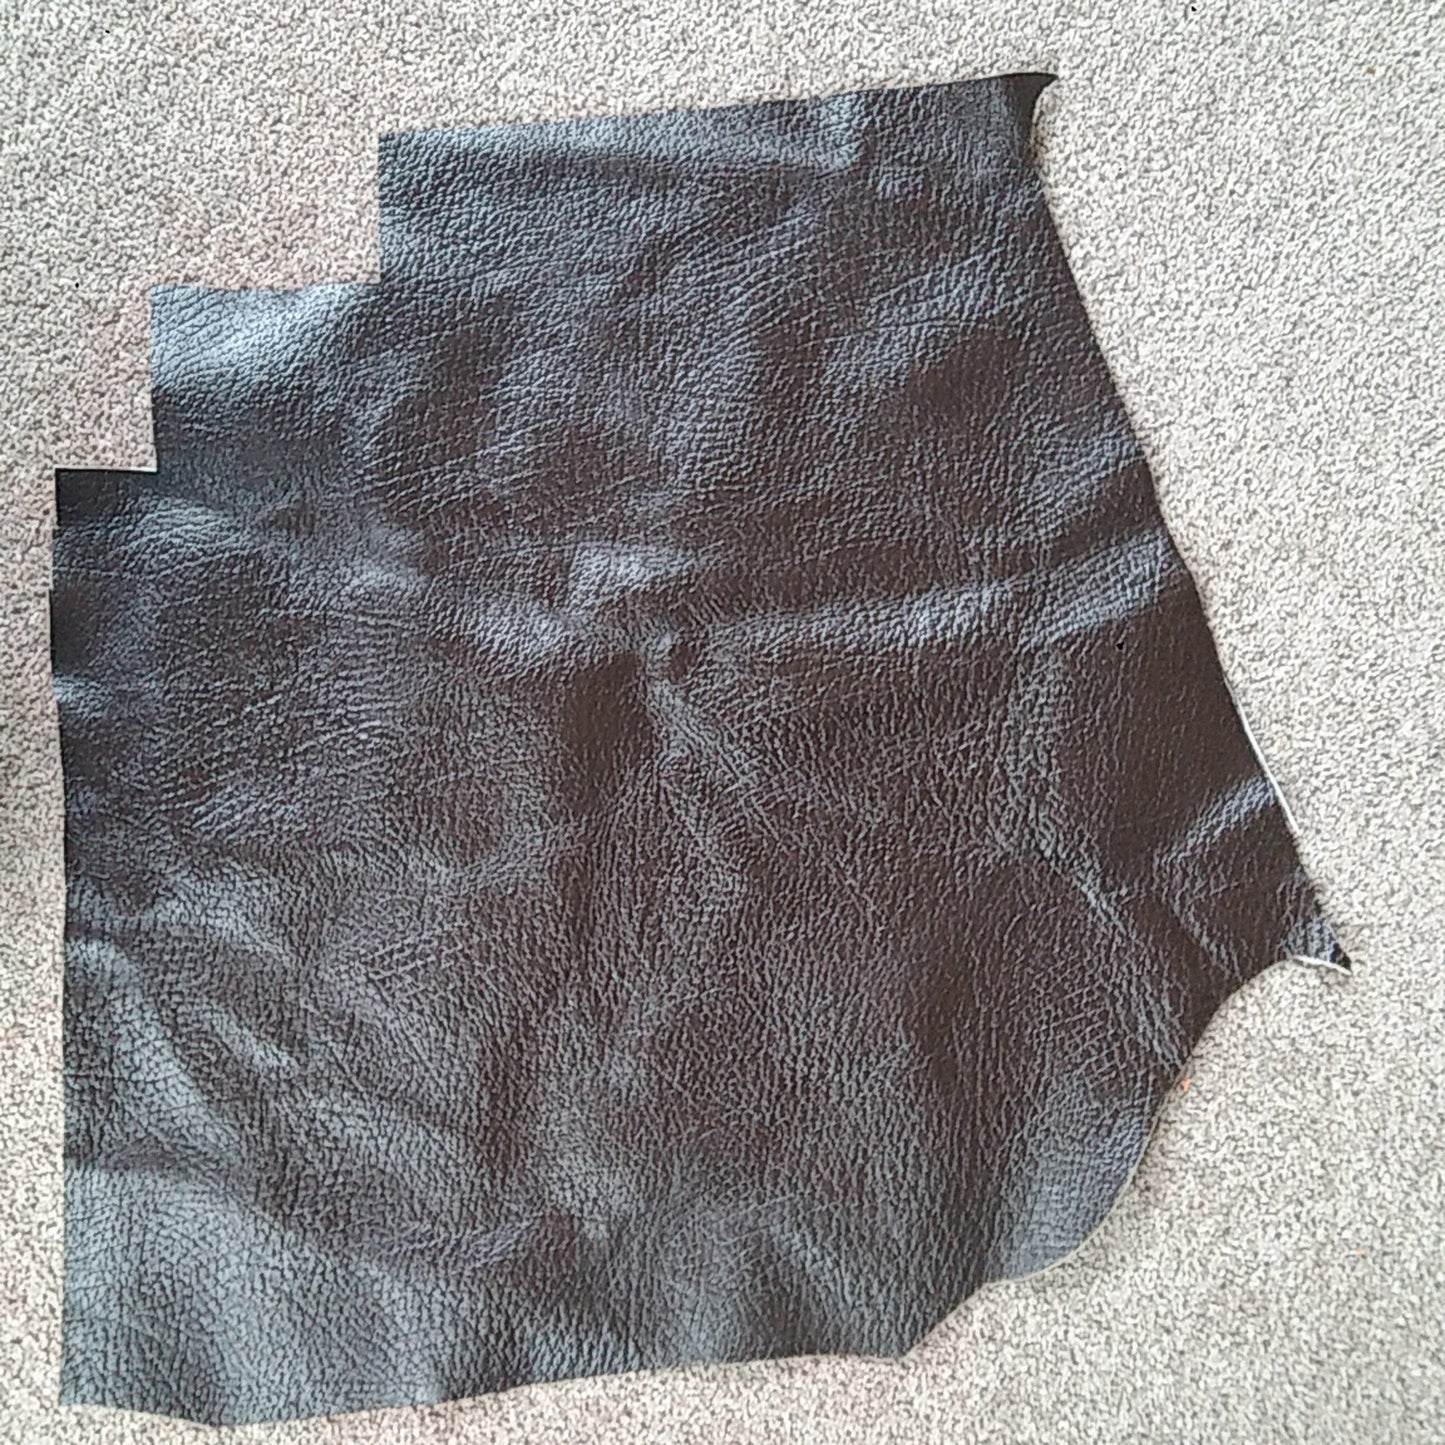 Dark Brown Scrap Leather Piece